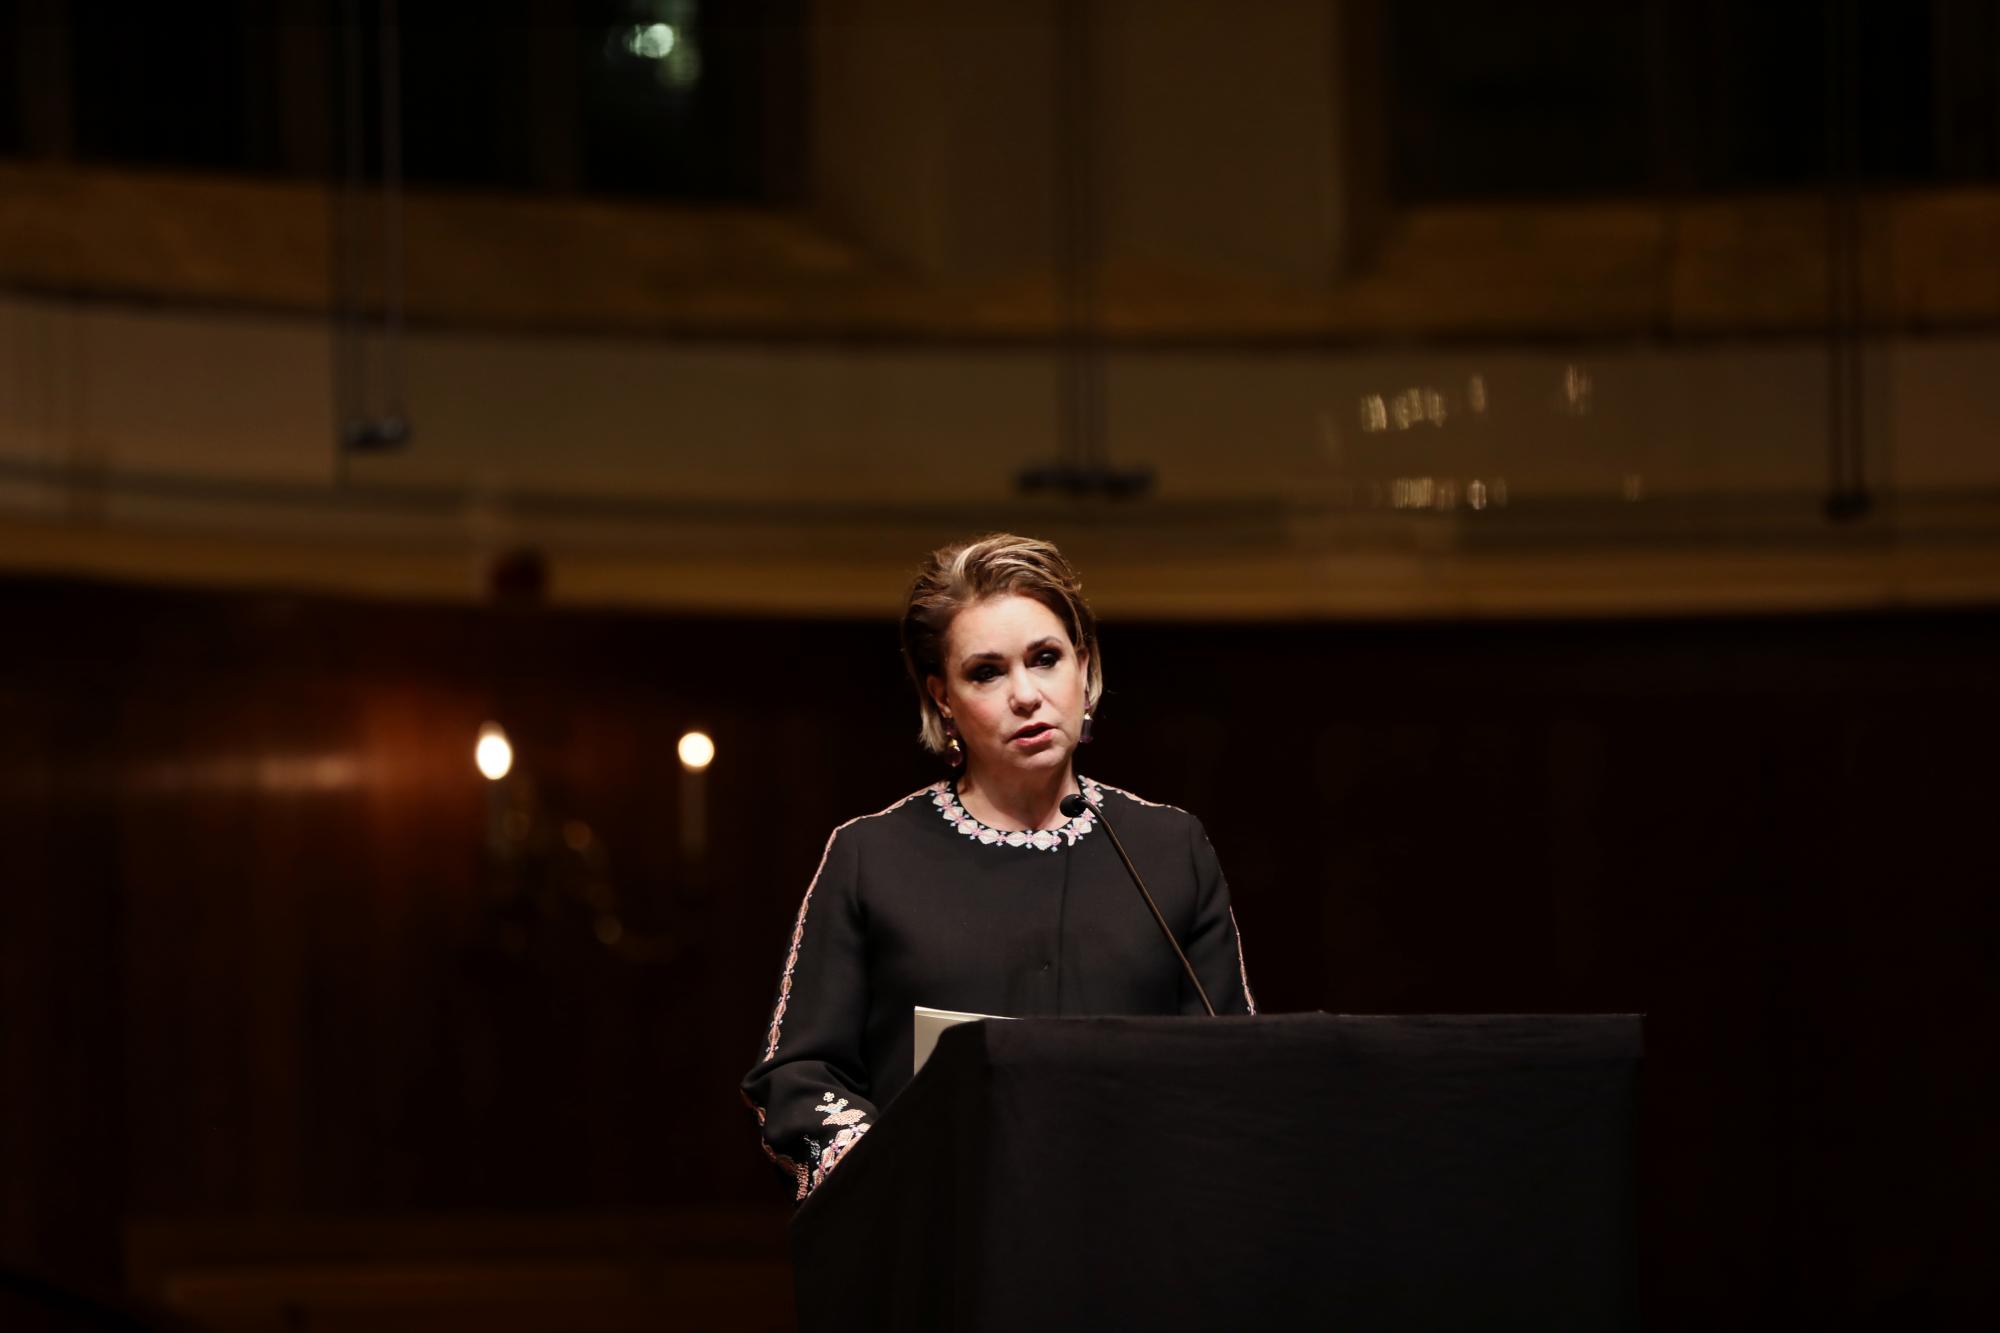 Durant son discours prononcé à la conférence de La Haye, S.A.R. la Grande-Duchesse a rappelé avec autant d’émotion que de fermeté, son engagement sans faille contre le viol utilisé comme arme de guerre en dédiant son forum « Stand Speak Rise Up ! » des 26 et 27 mars 2019 aux survivantes.
